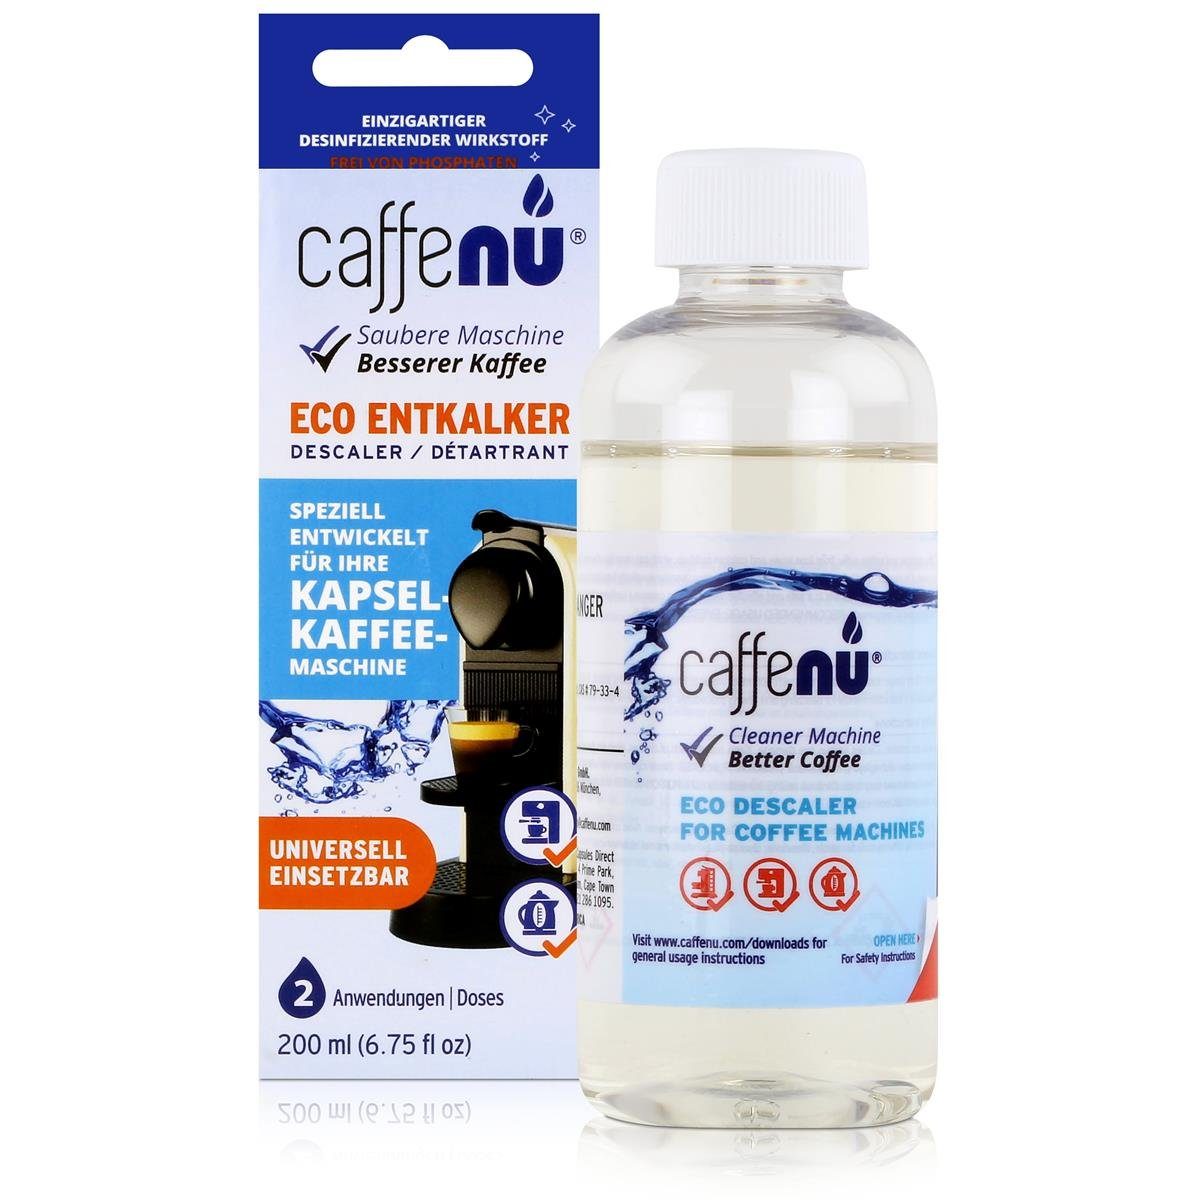 für 200ml - (6e Entkalker Entkalker caffenu Kapsel-Kaffee-Maschinen Speziell Eco Caffenu